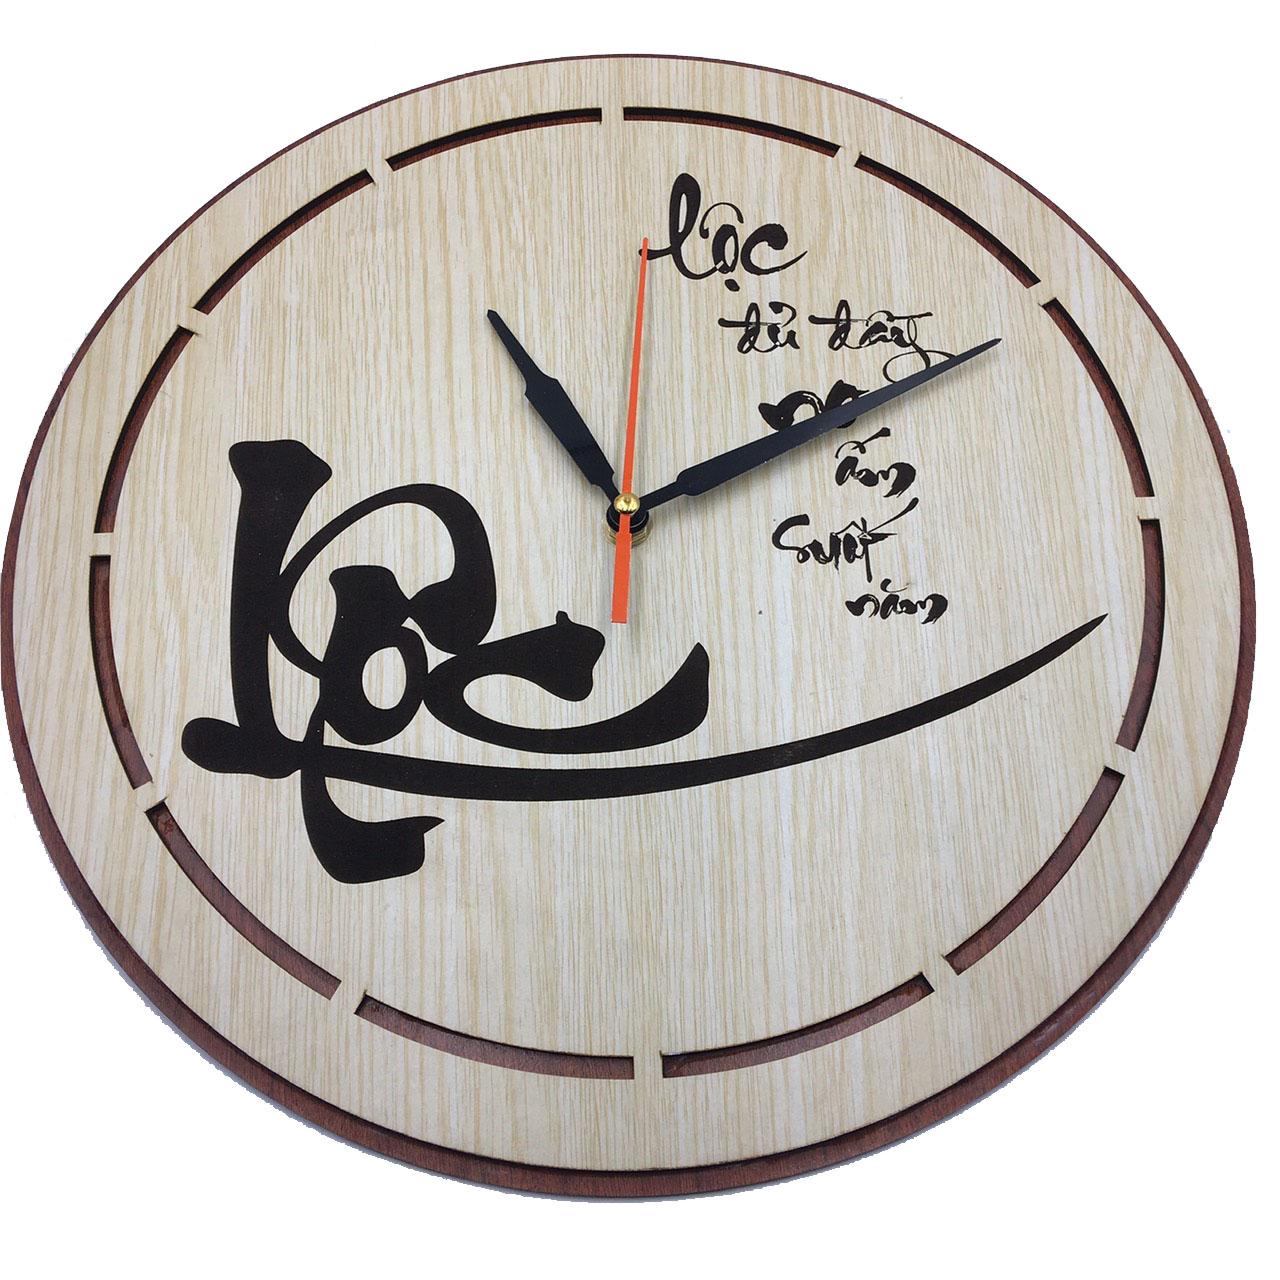 Đồng hồ treo tường chữ Lộc trang trí